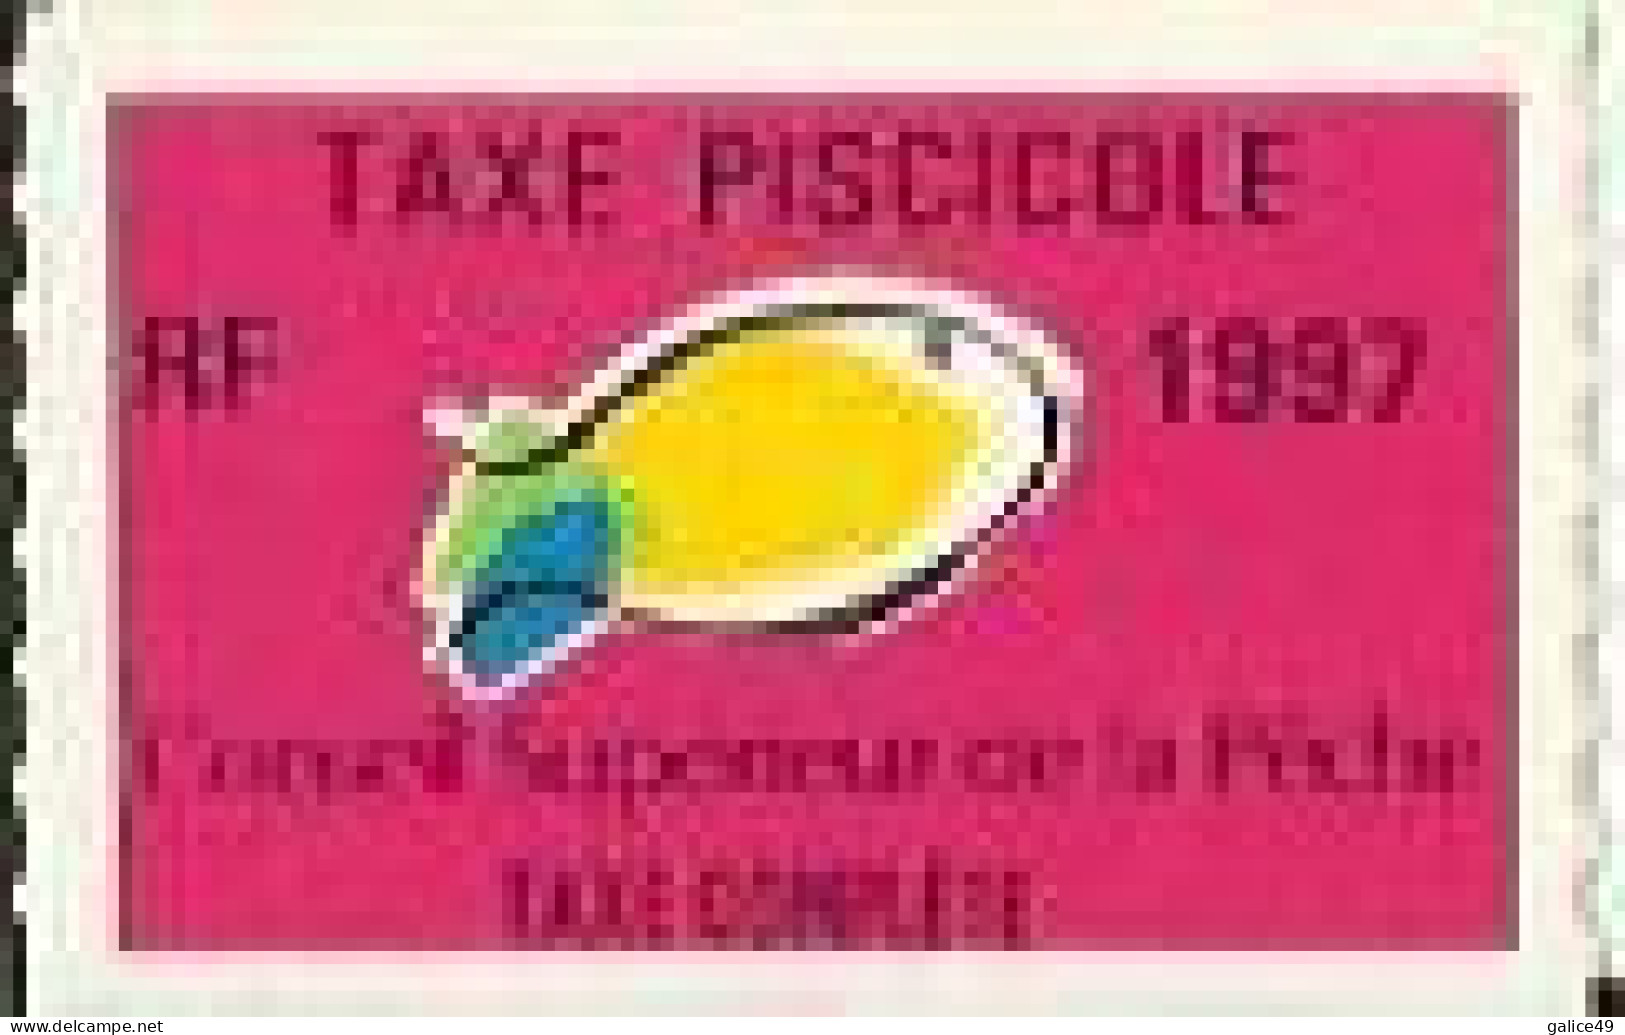 Taxe Piscicole Complète 1997 - Vierge - Otros & Sin Clasificación